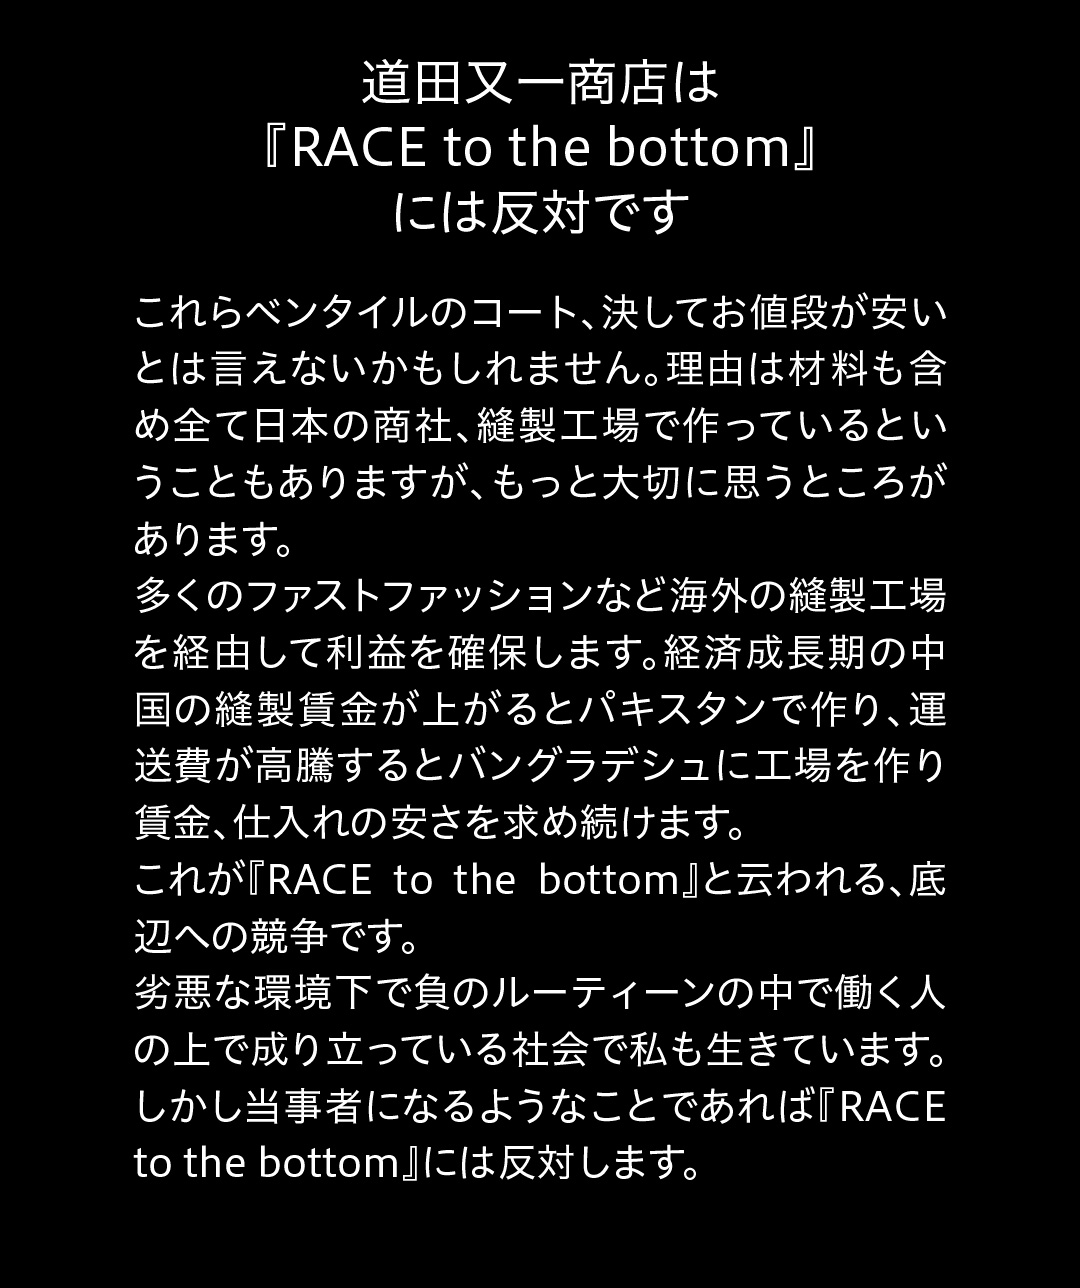 道田又一商店は『RACE to the bottom』には反対です